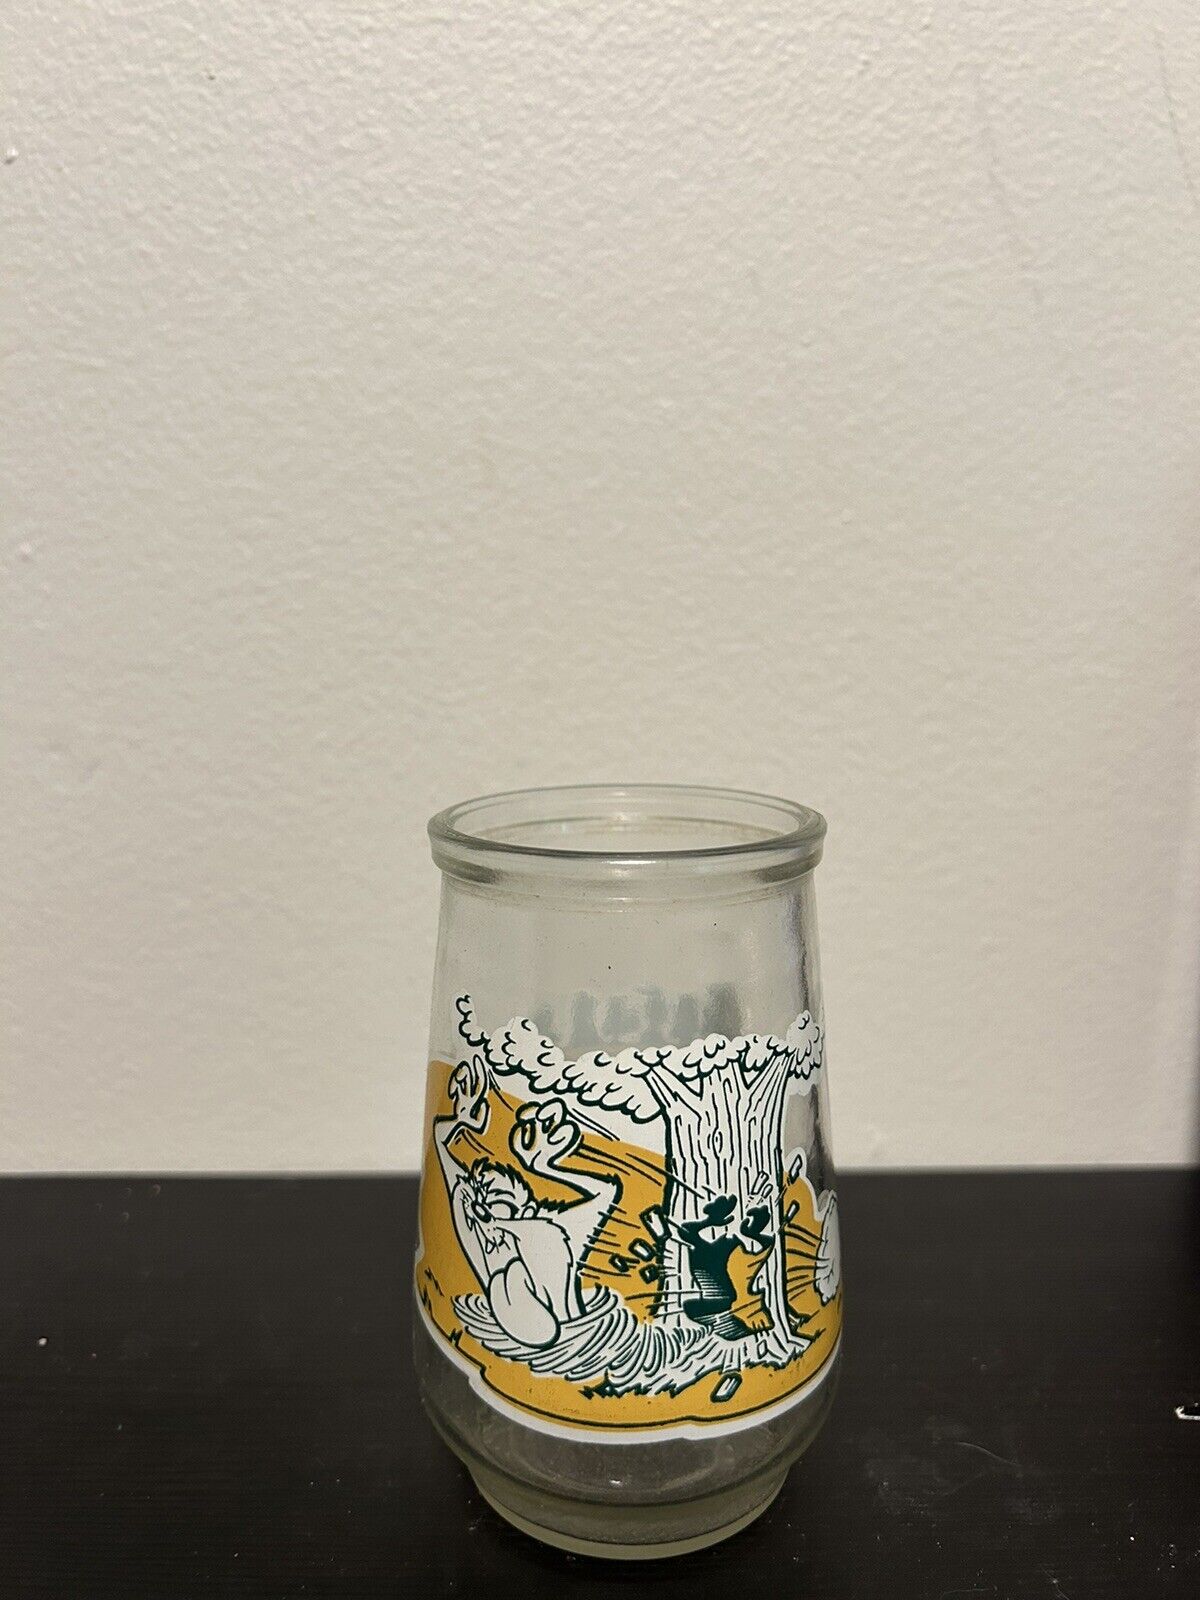 1995 Vintage Warner Bros Jelly Jar